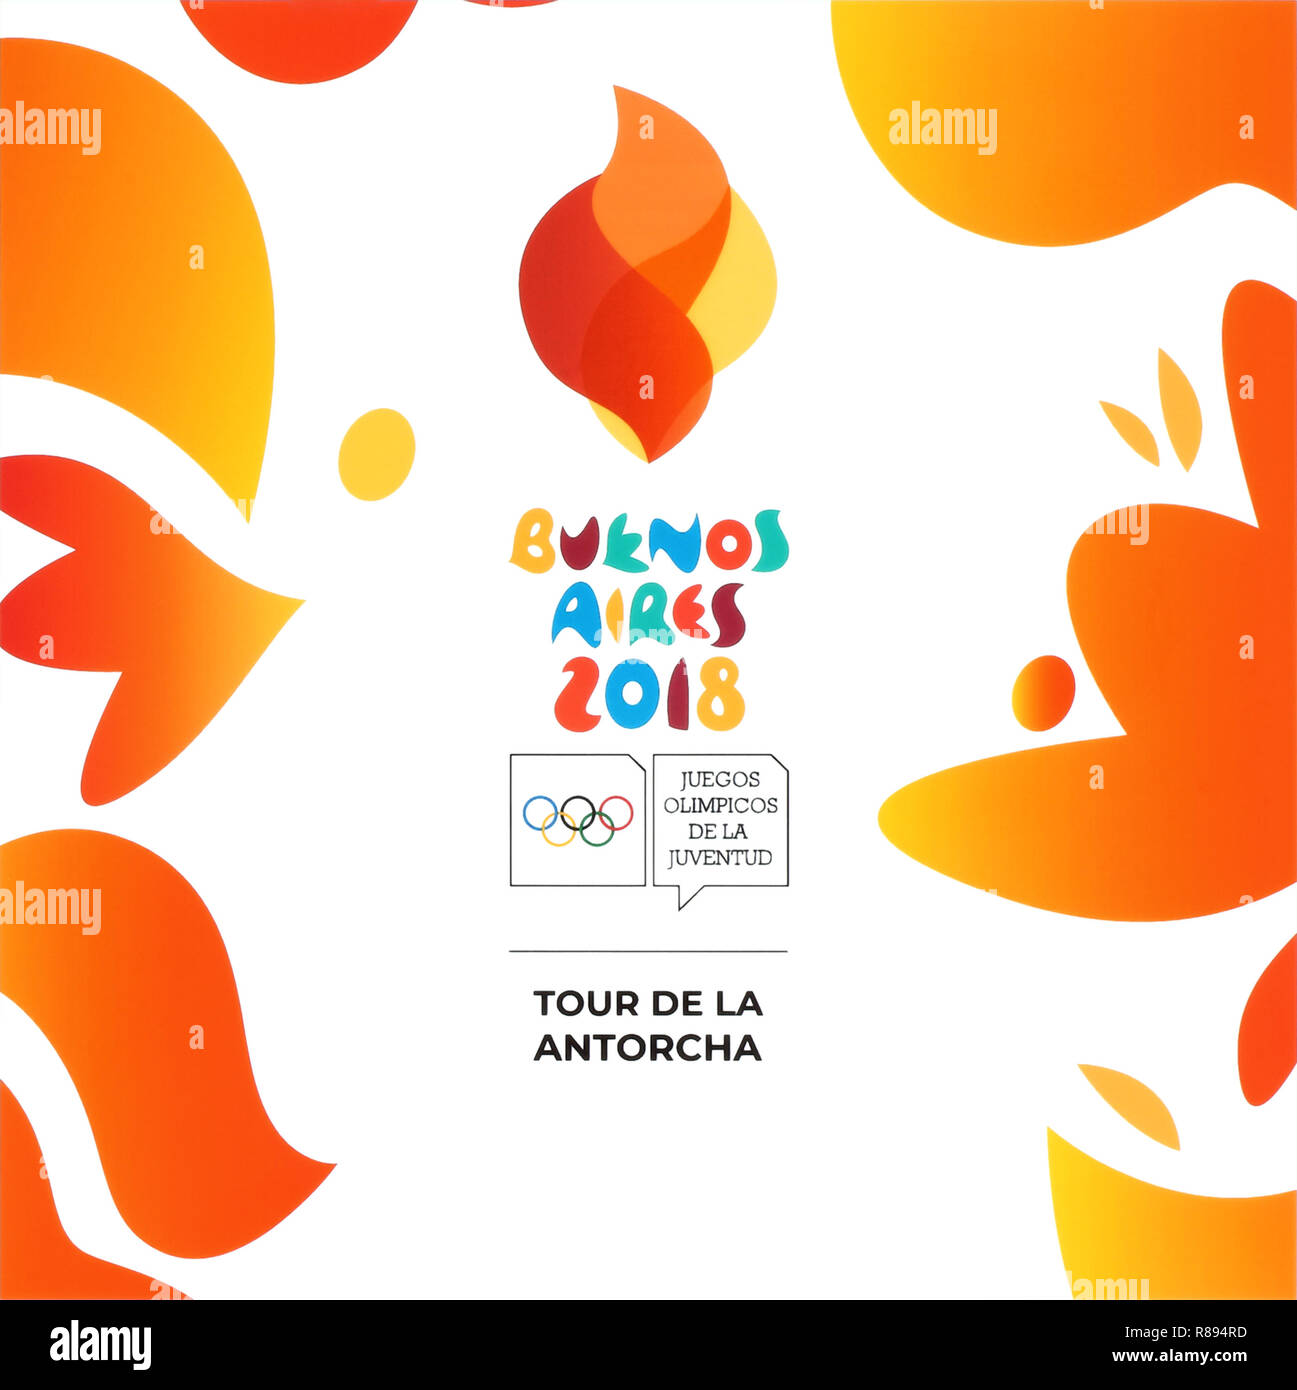 Kiev, Ucraina - 16 agosto 2018: Buenos Aires 2018 stampato su carta bianca, Estate Olimpiadi della Gioventù. Si tratta di una festa dello sport per gli adolescenti. Foto Stock